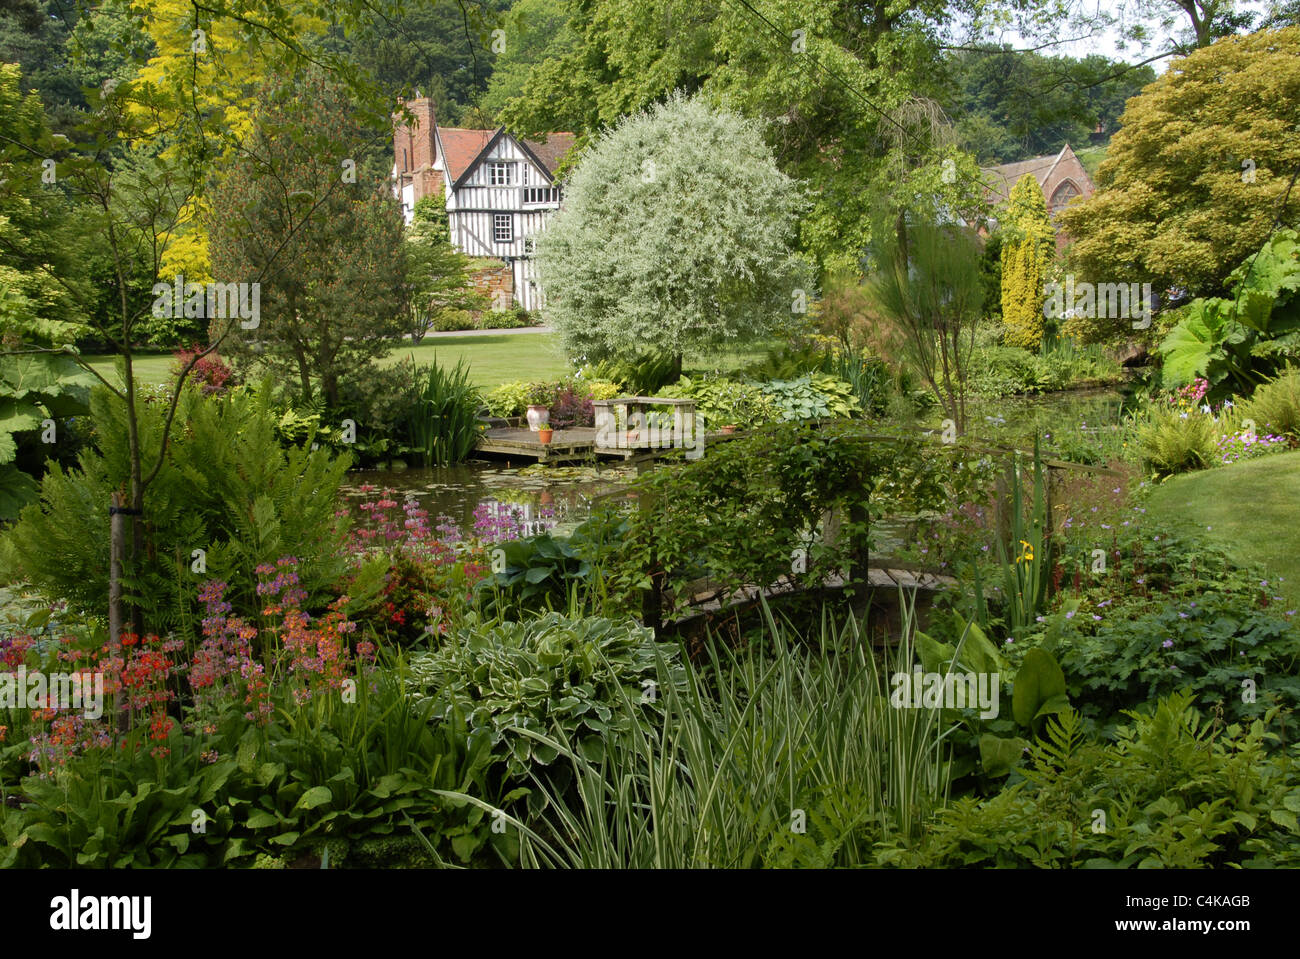 Eine sehr ausführliche Landschaft Szene eines typisch englischen Country-Garten mit Tudor Haus im Hintergrund, Blumenbeete und Wasserspiel Stockfoto